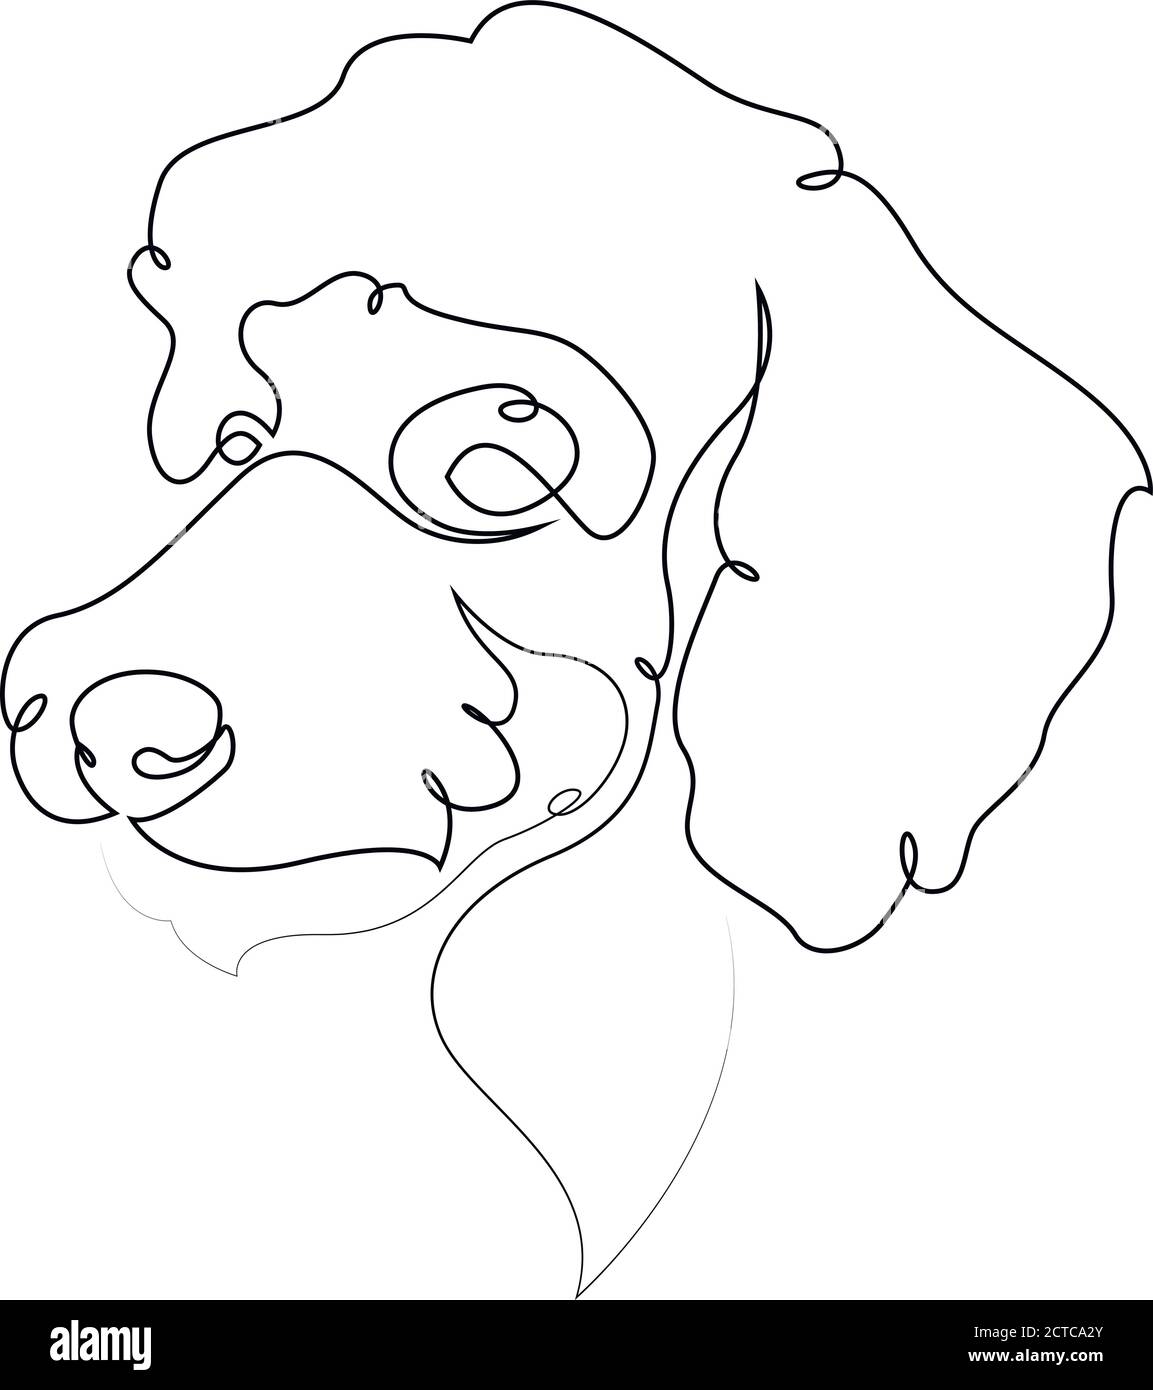 Pudel Vektor Hund Porträt. Durchgehende Linie. Zeichnung der Hundelinie Stock Vektor